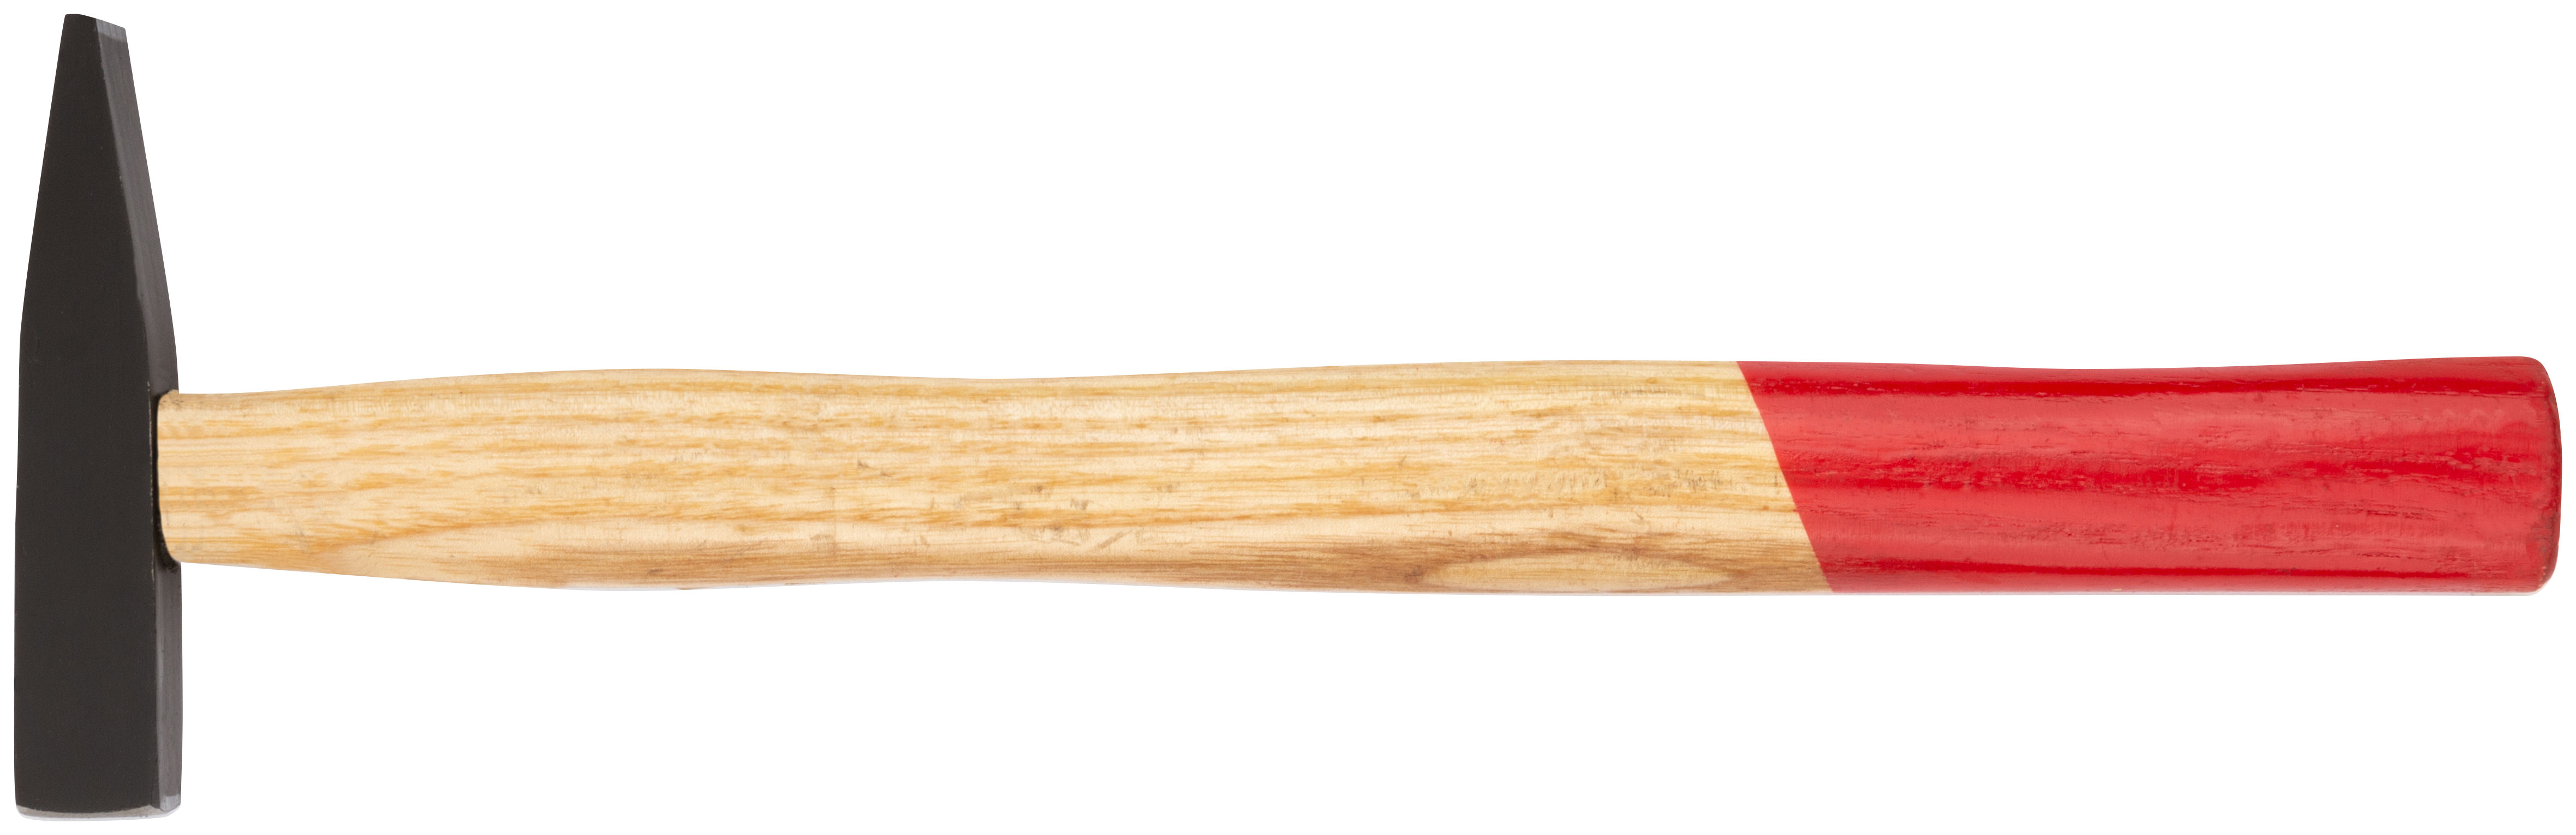 Молотки кованые "Оптима", деревянная ручка